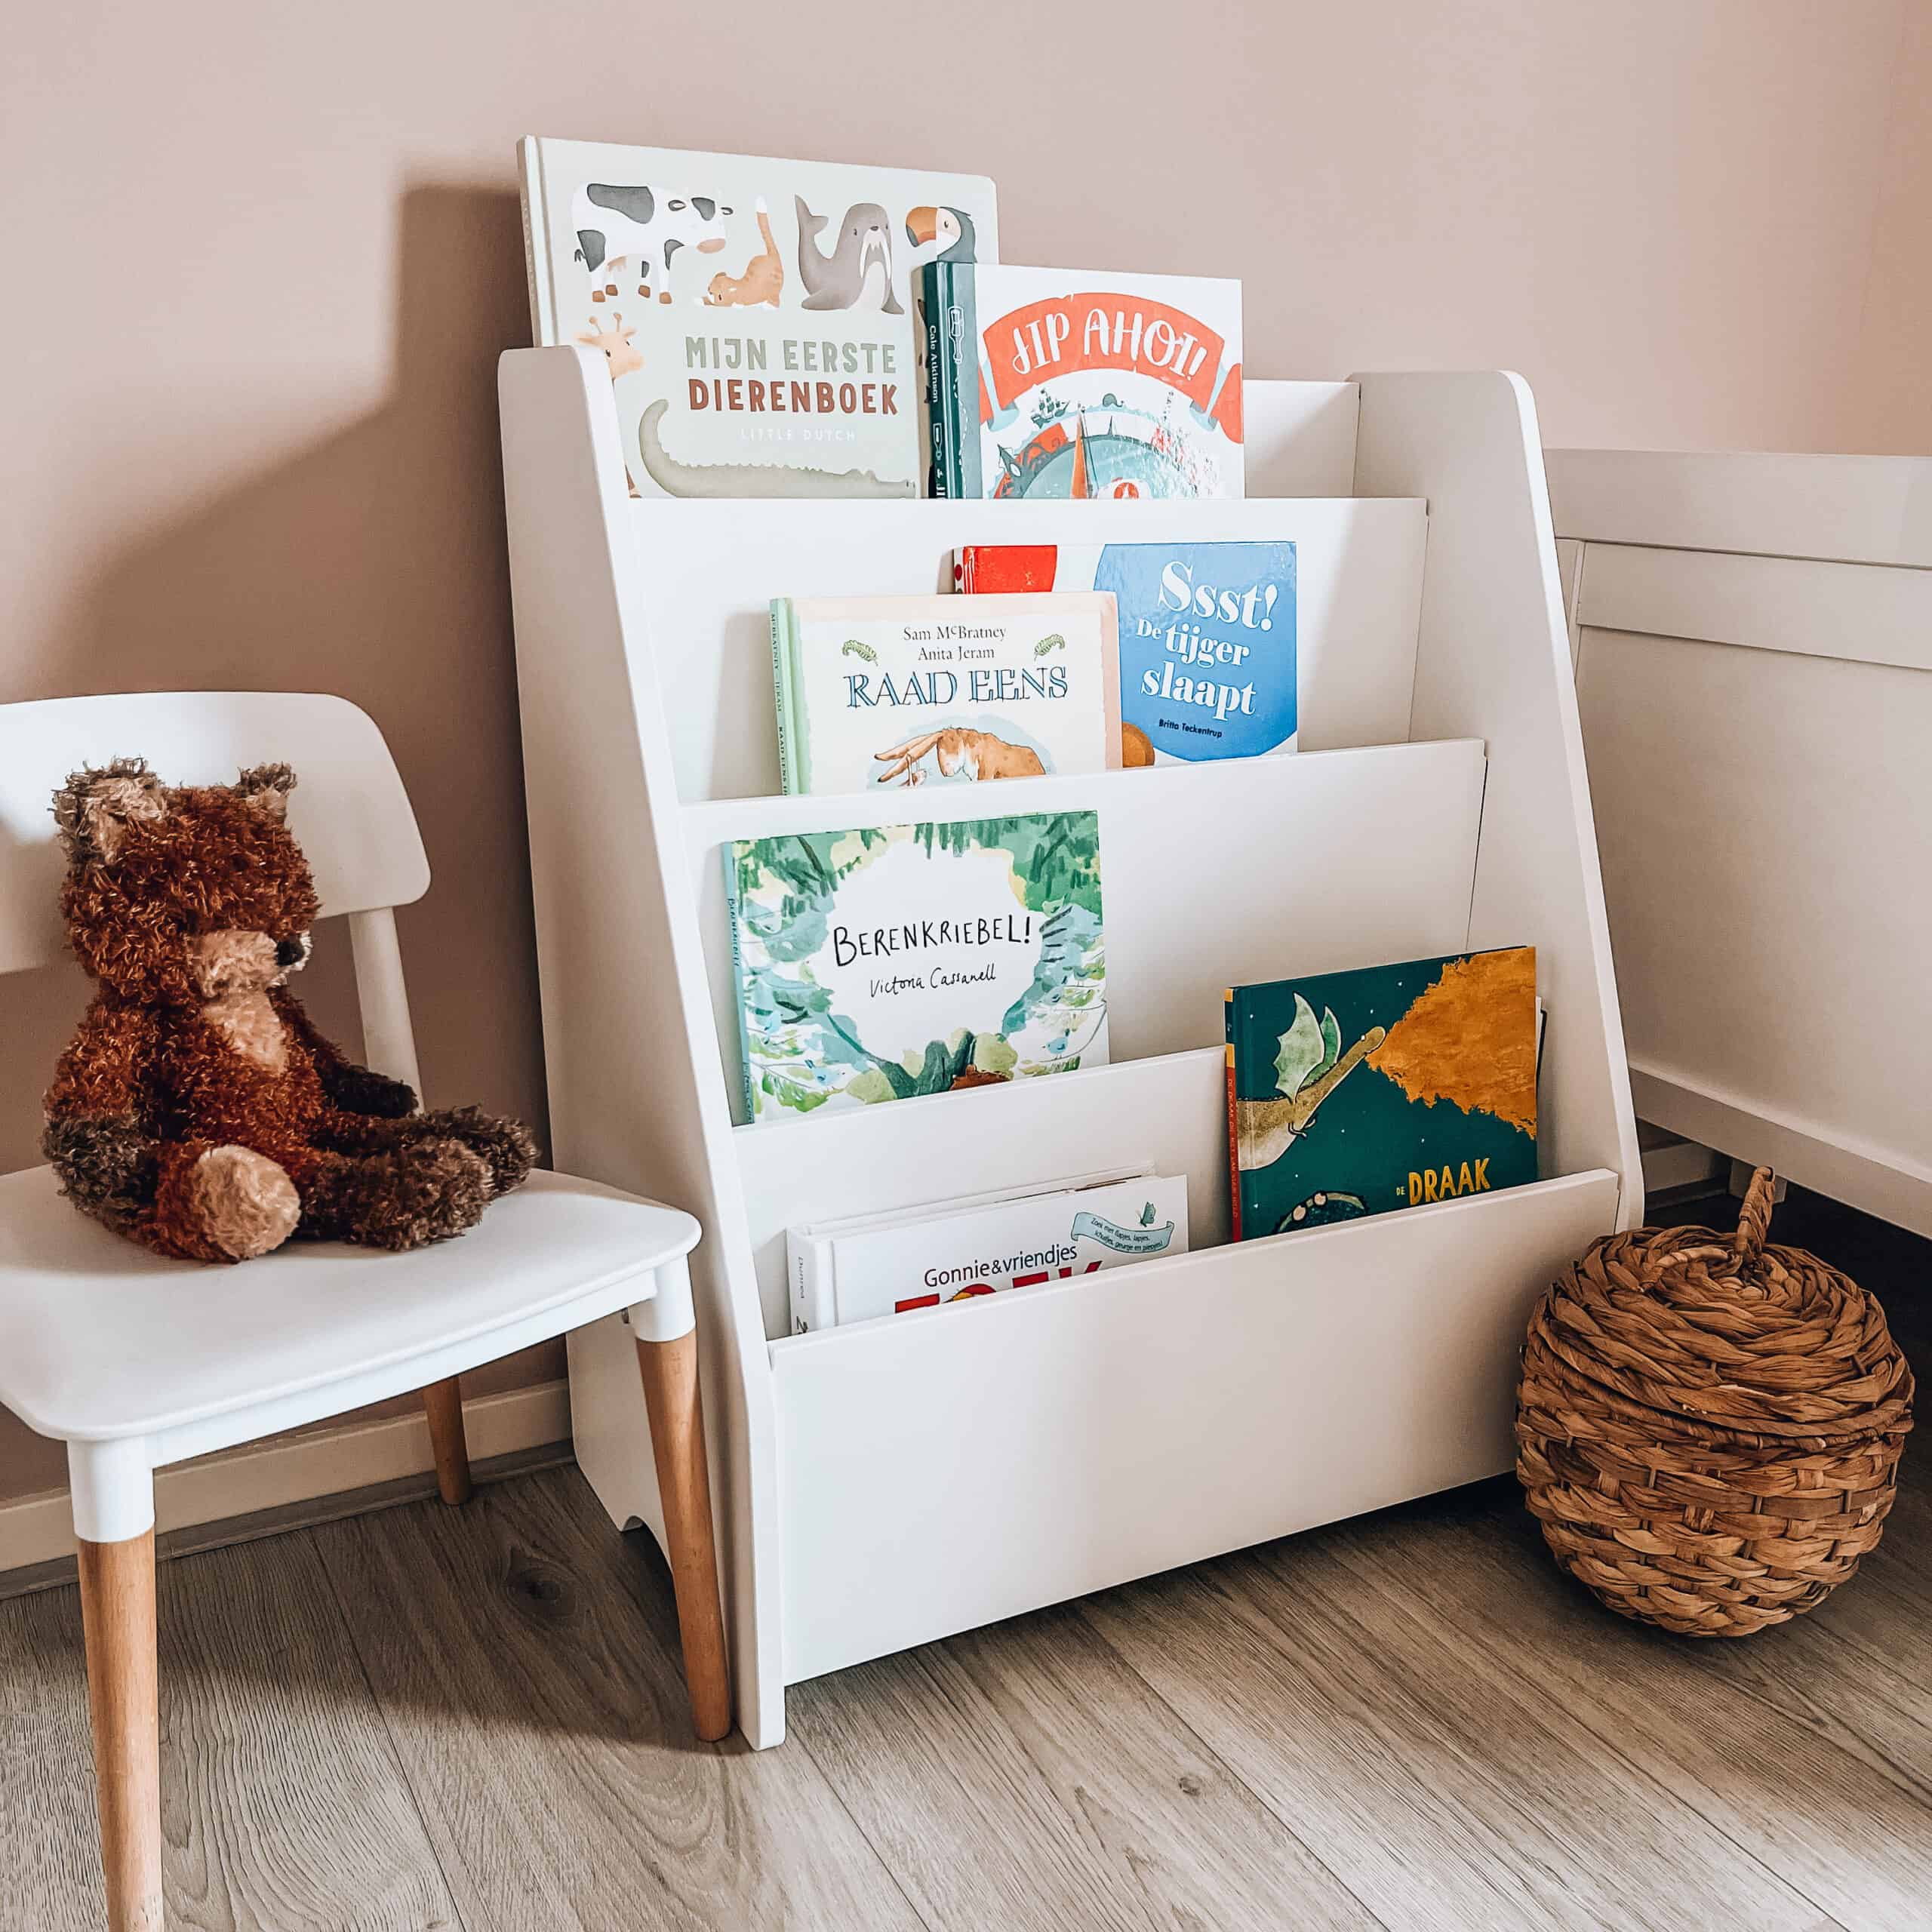 Kinderkamer TIP deze Montessori boekenkast bij Kwantum! - Mama's Meisje blog